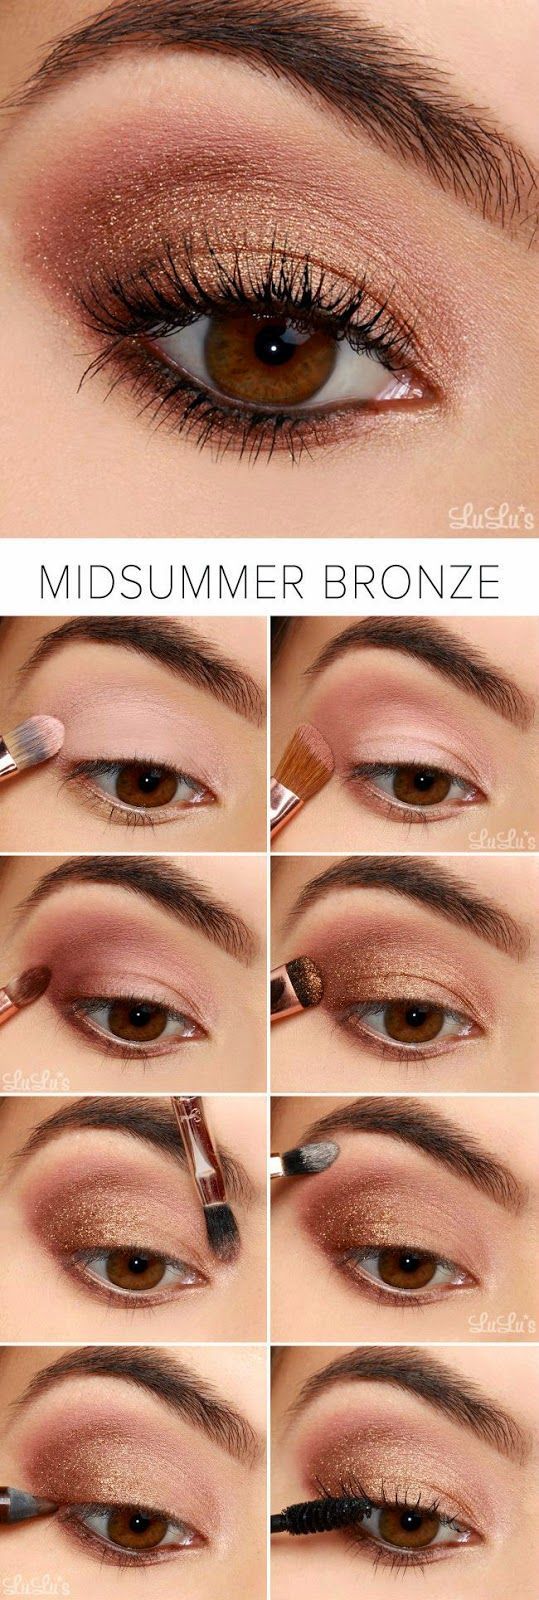 Tutorial maquillaje fácil DIT colores bronce y rosa verano